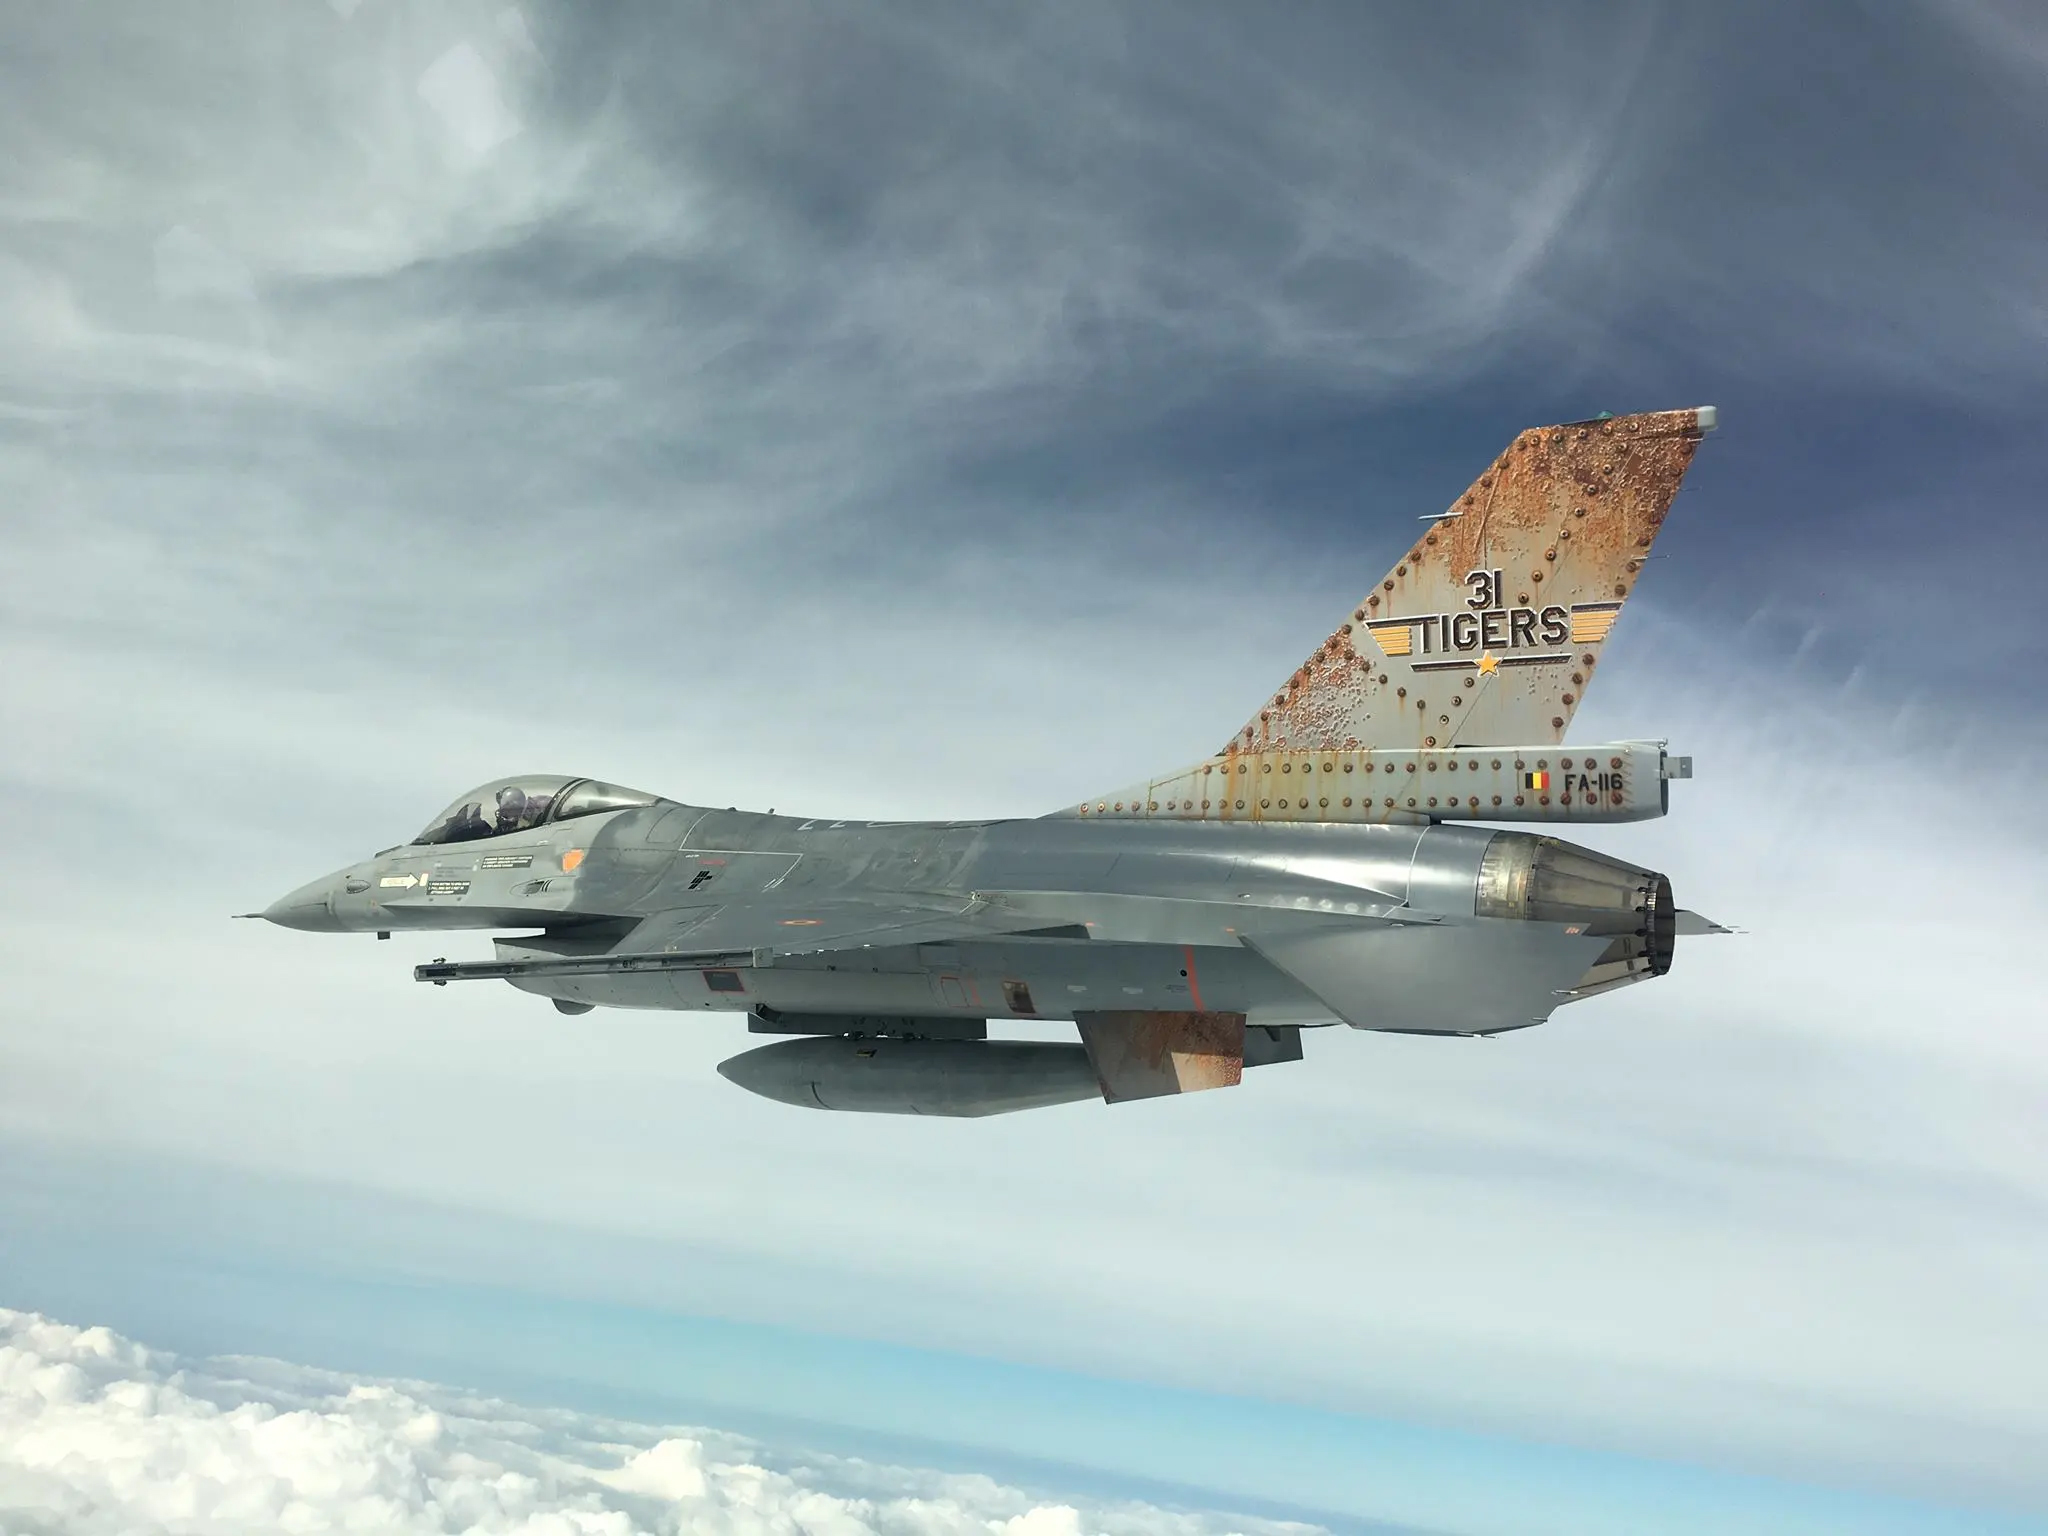 31 Sq Belgian Air Force 2019 Tigermeet